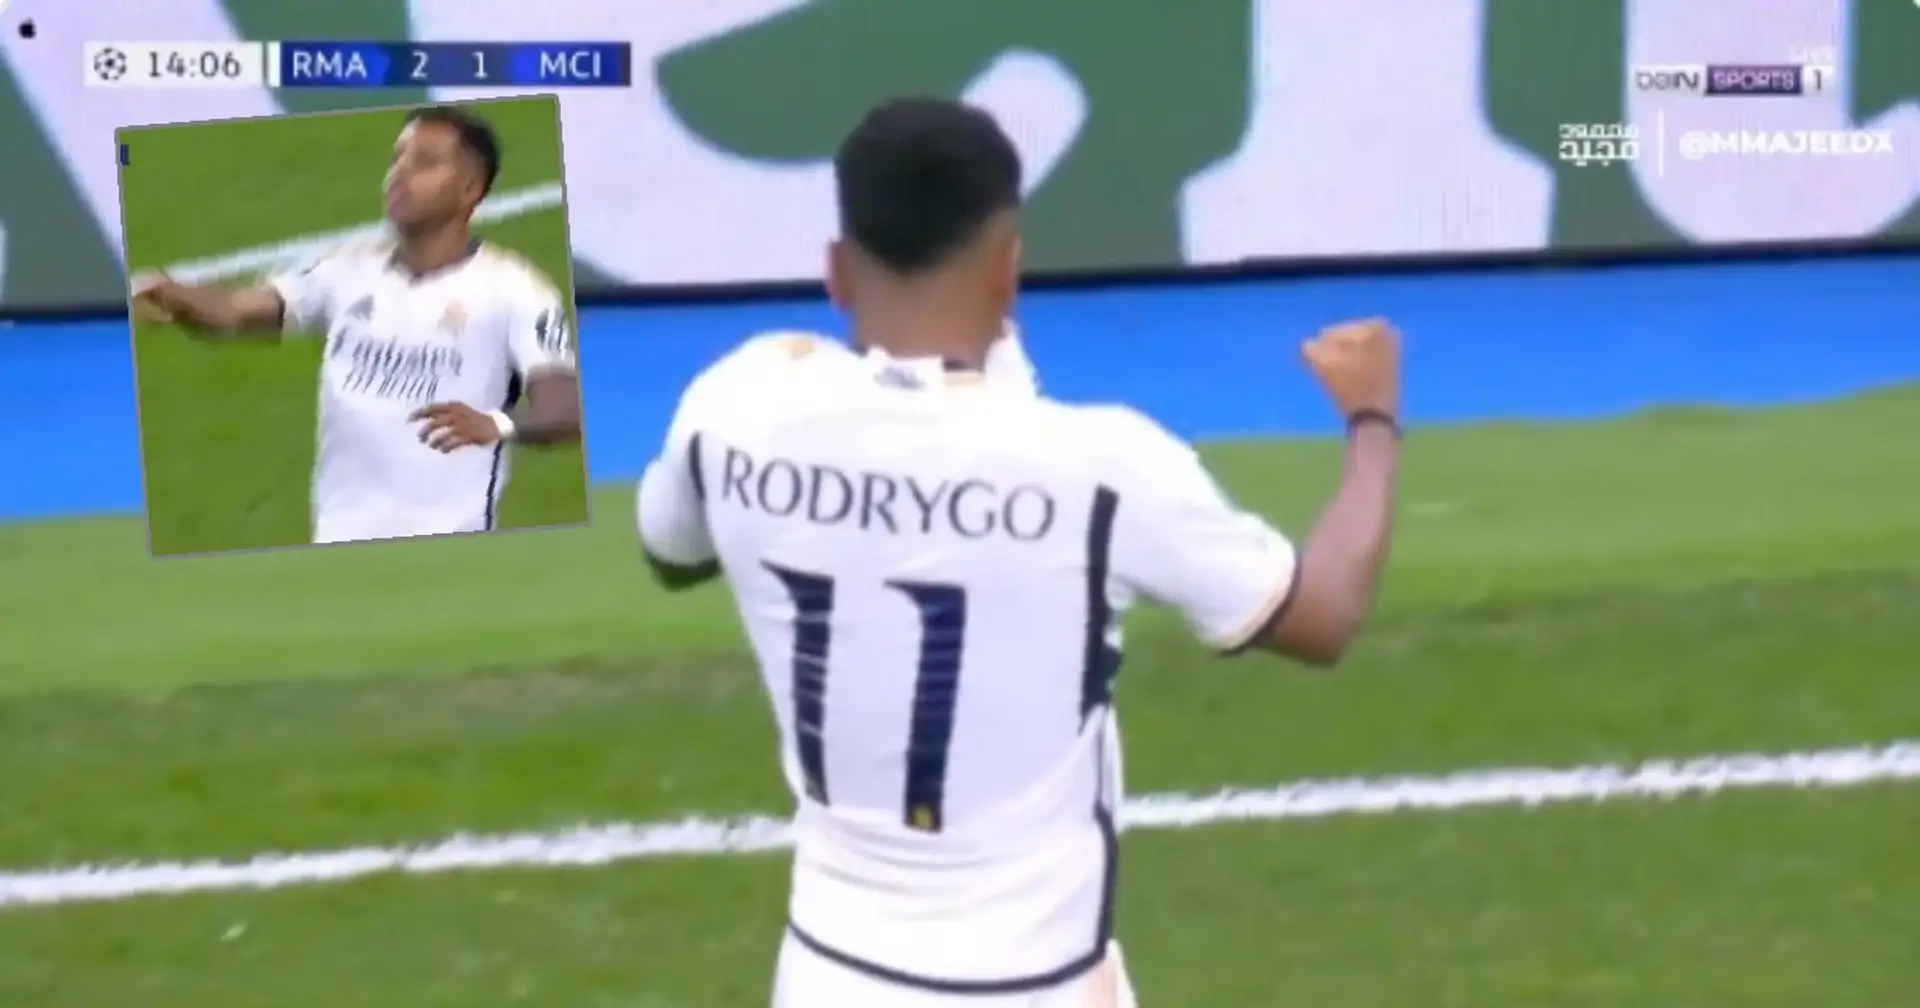 REPÉRÉ: le beau geste de Rodrygo envers les supporters du Real Madrid après le but